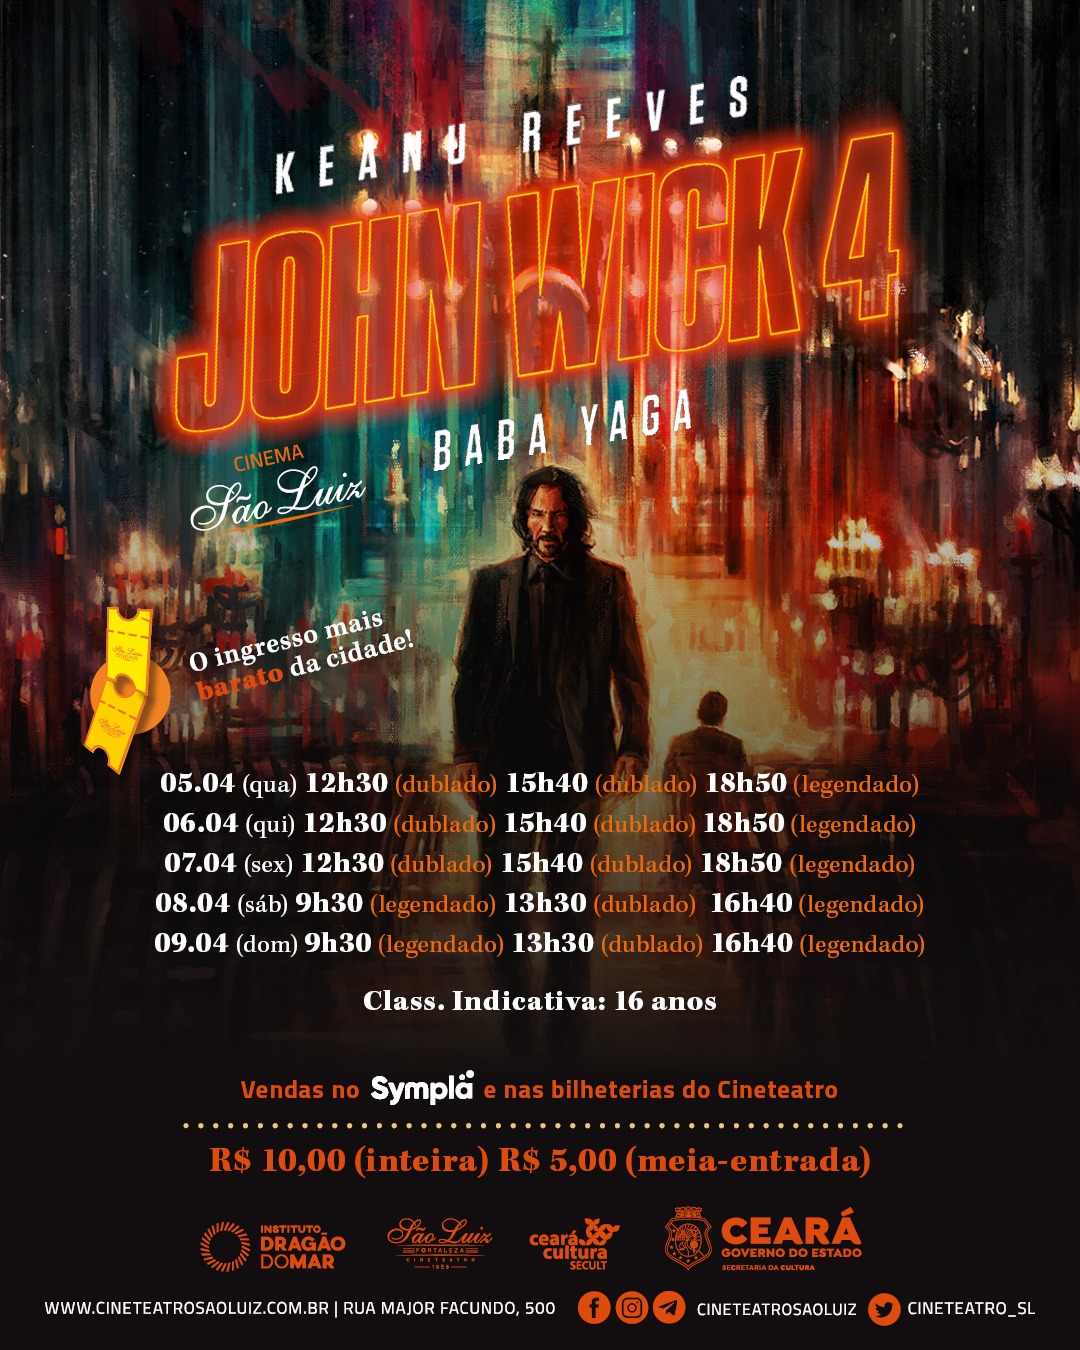 Paris Filmes divulga outros dez cartazes de personagens de “John Wick 4:  Baba Yaga”